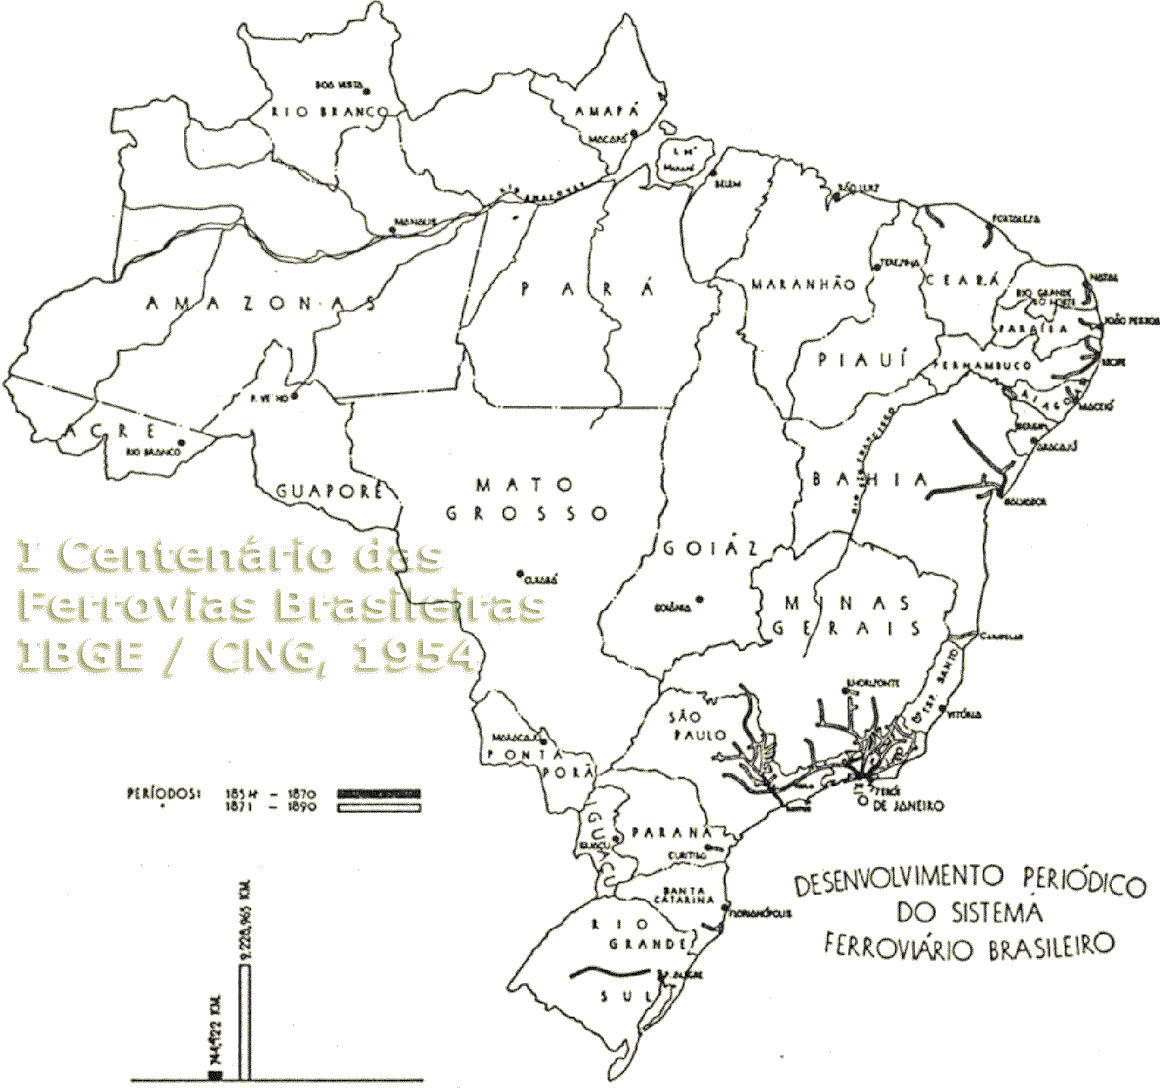 Mapa das estradas de ferro existentes no Brasil em 1890